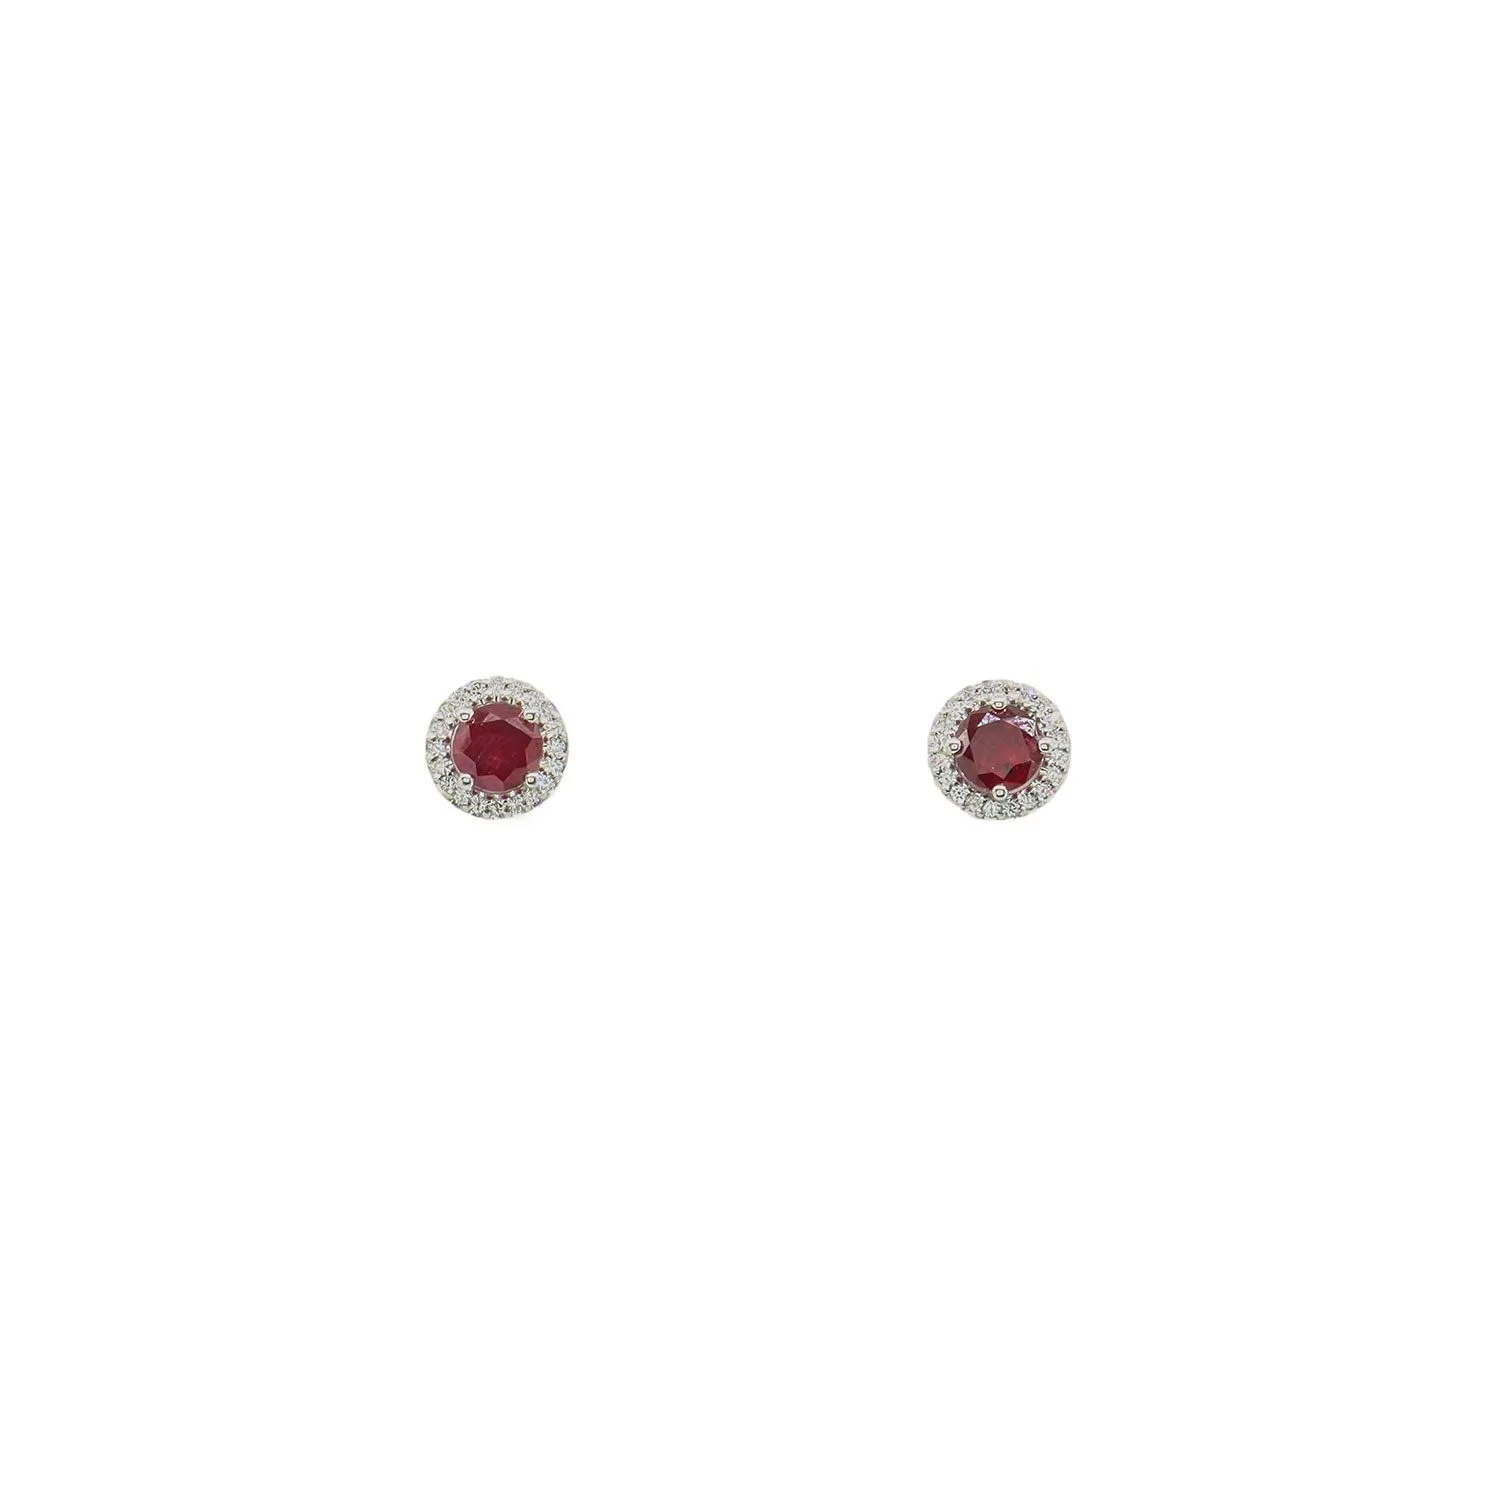 Die Chita-Ohrringe bestehen aus Rubin und Diamanten